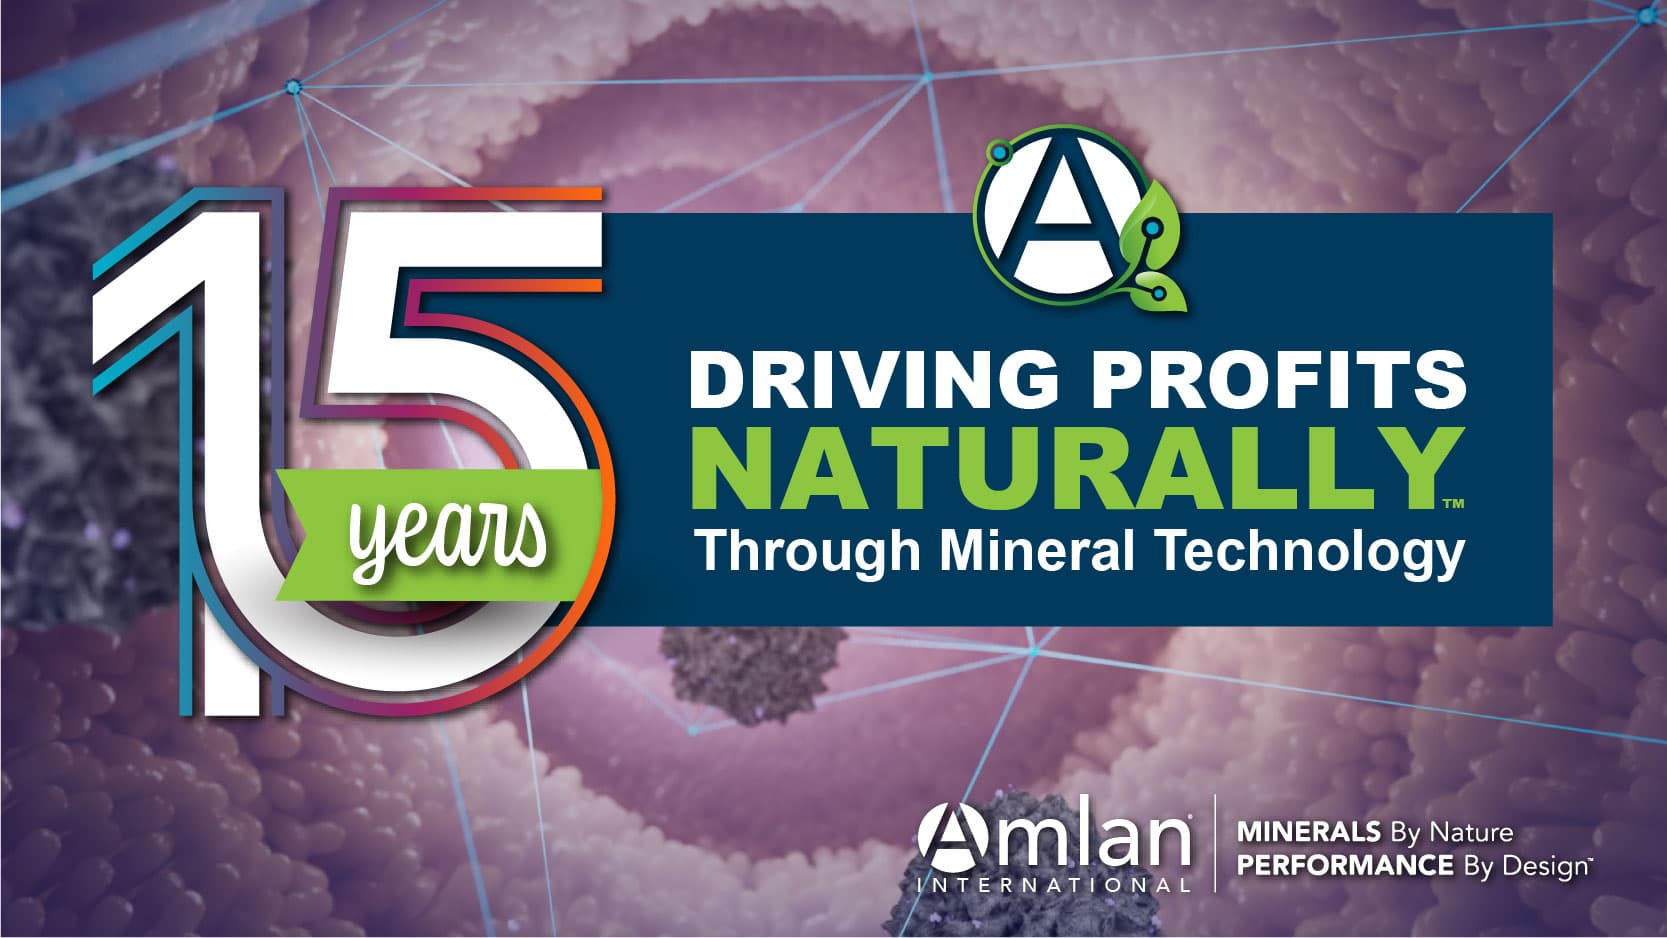 15 年通过矿物技术自然地推动利润。